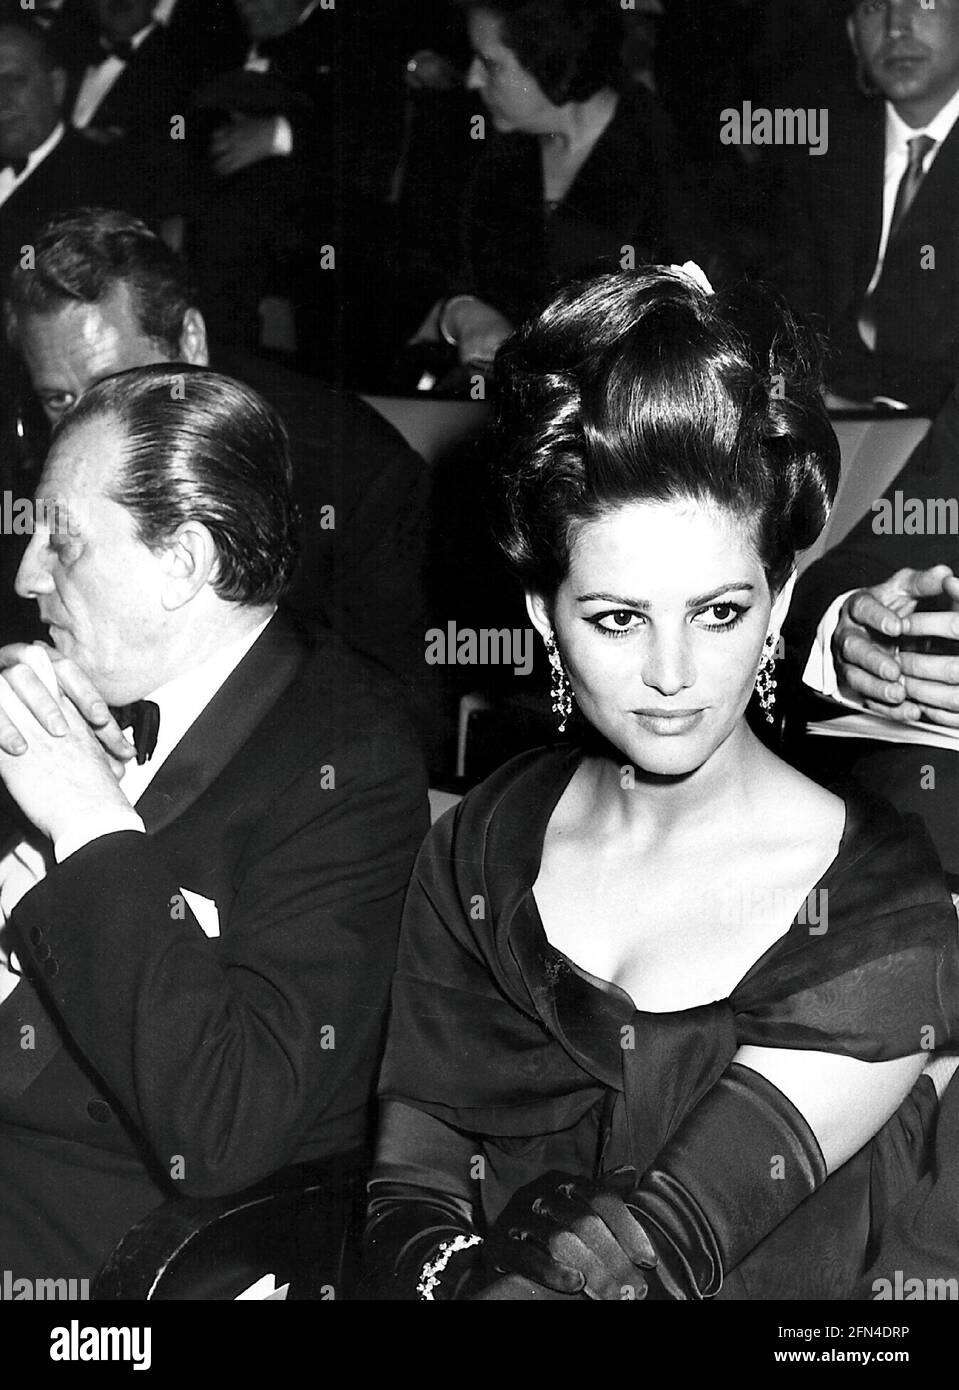 Cardinale, Claudia, * 15.4.1938, italienische Schauspielerin, mit Luchino Visconti, Sitzend, 60er Jahre, weiblich, ZUSÄTZLICHE-RIGHTS-CLEARANCE-INFO-NOT-AVAILABLE Stockfoto